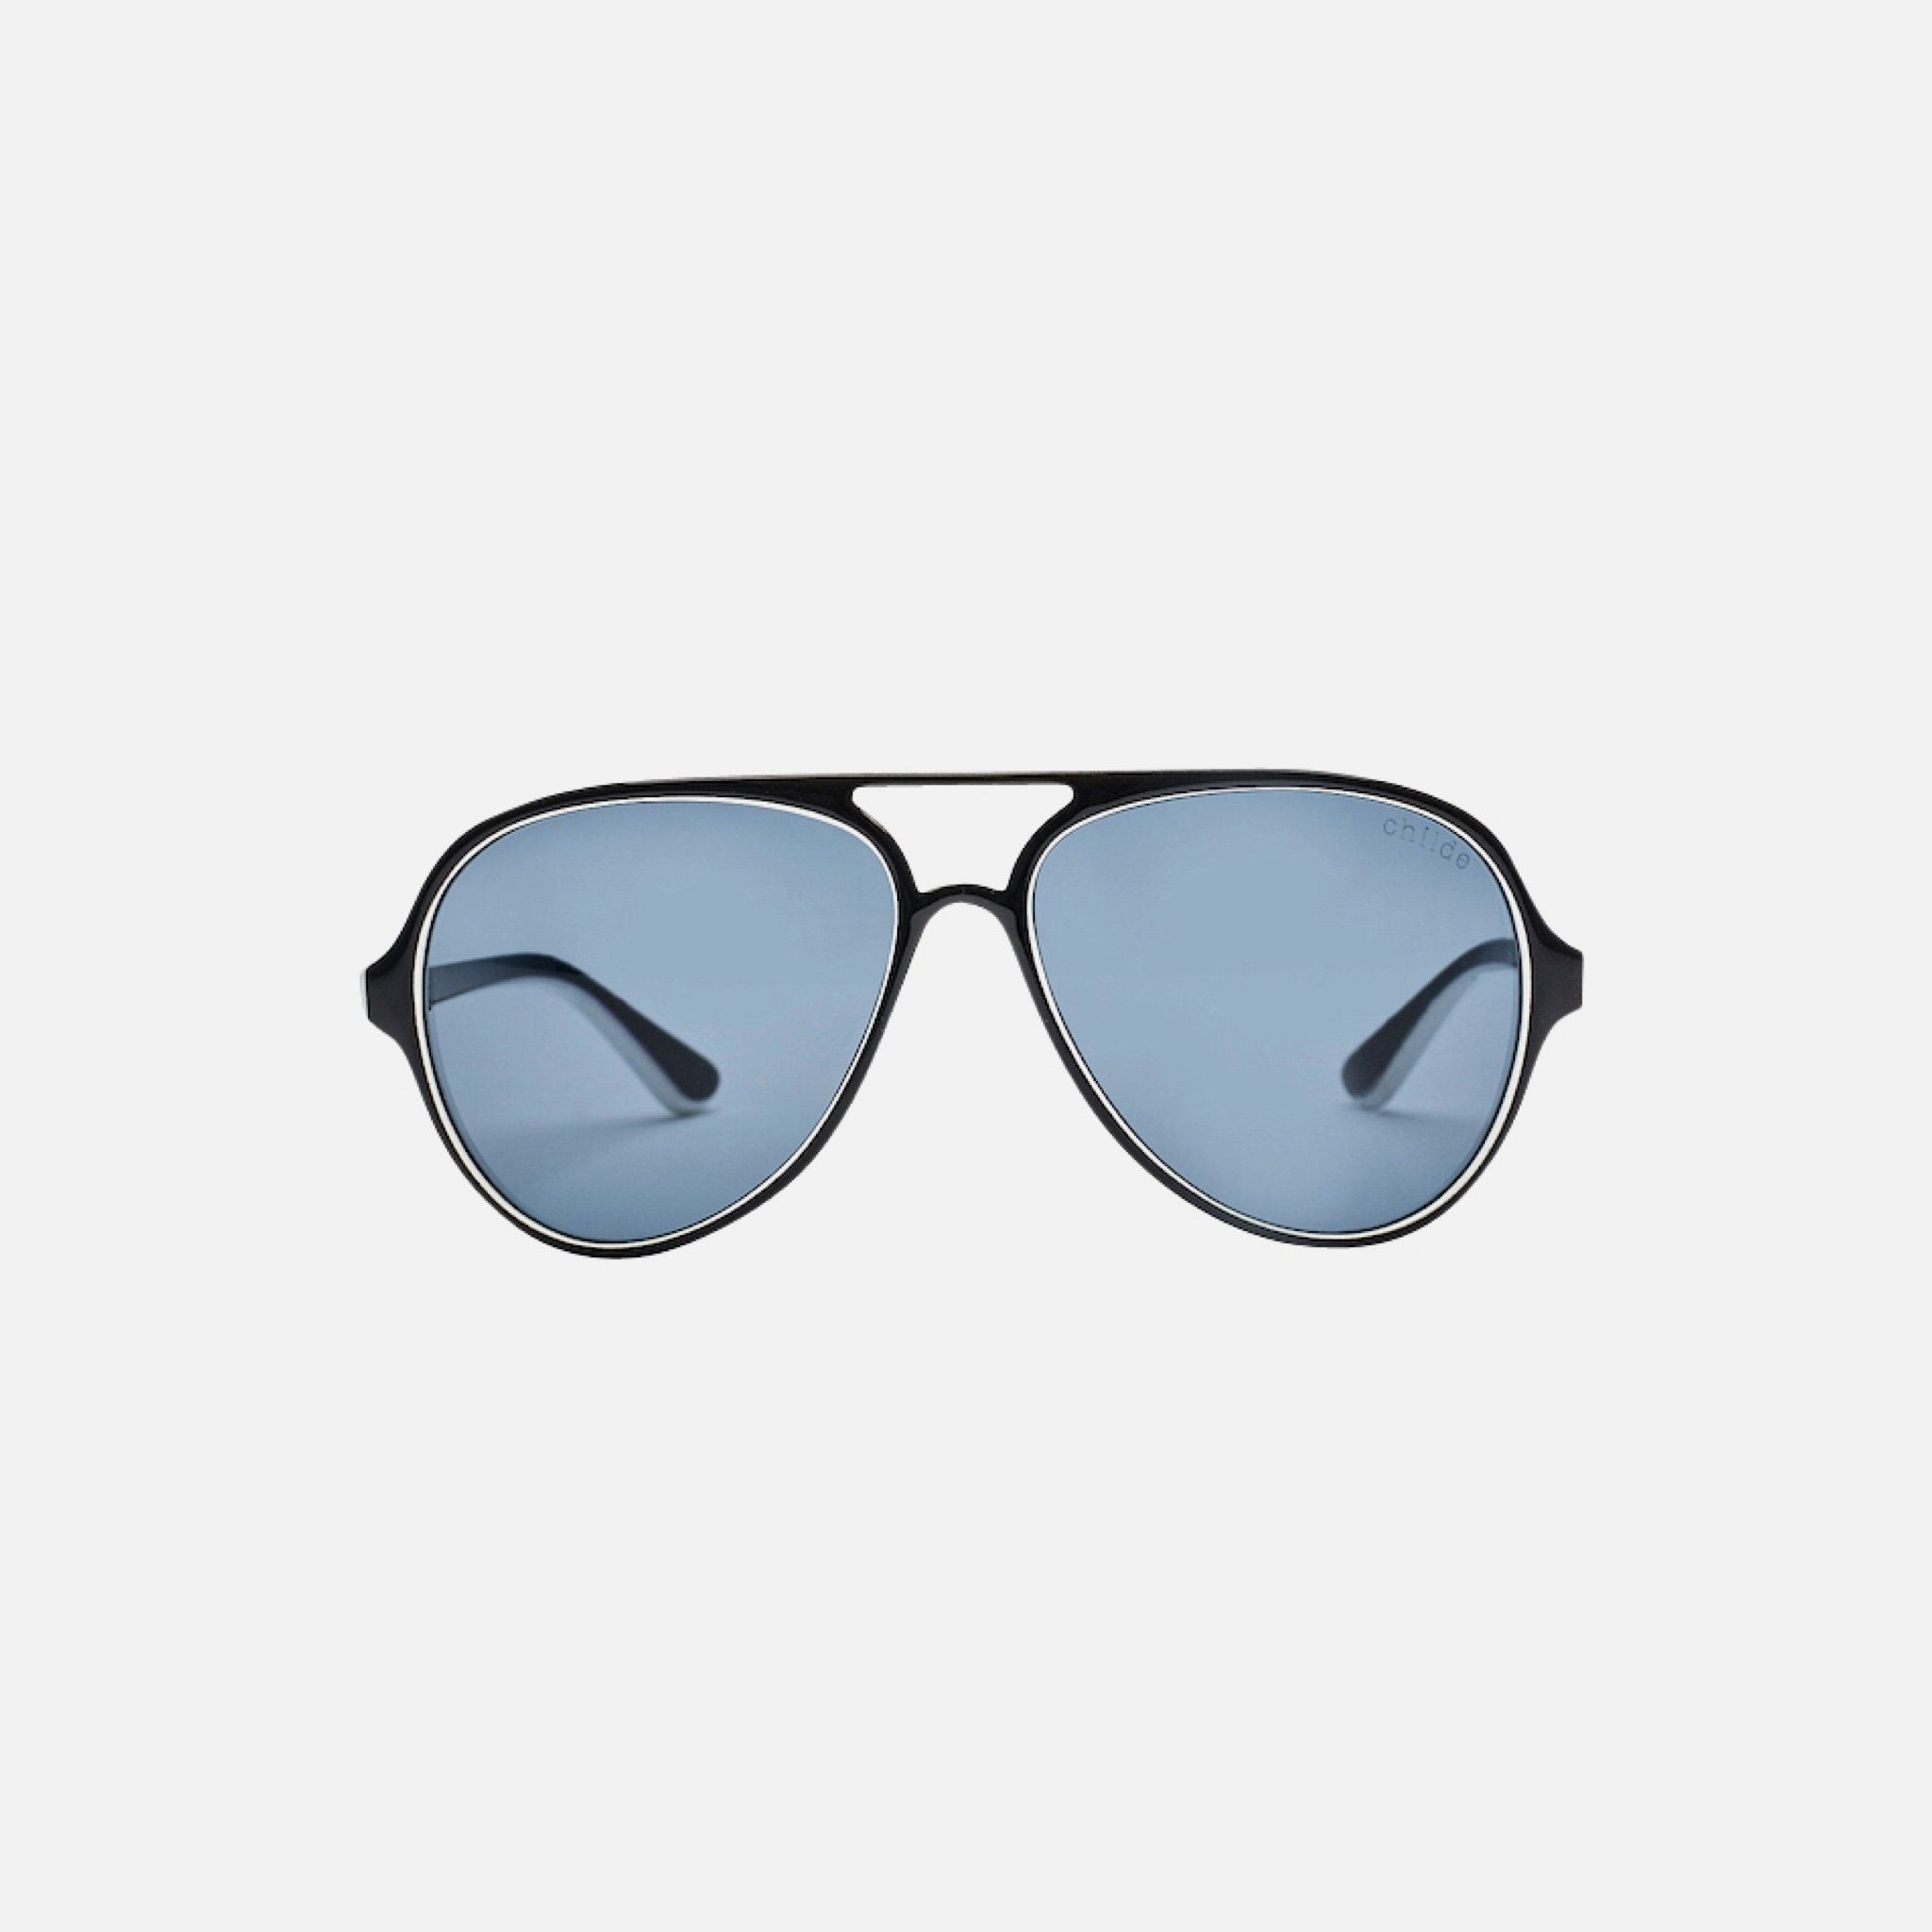 Childe DELETE Sunglasses Black/White | Grey Lens - Childe Eyewear